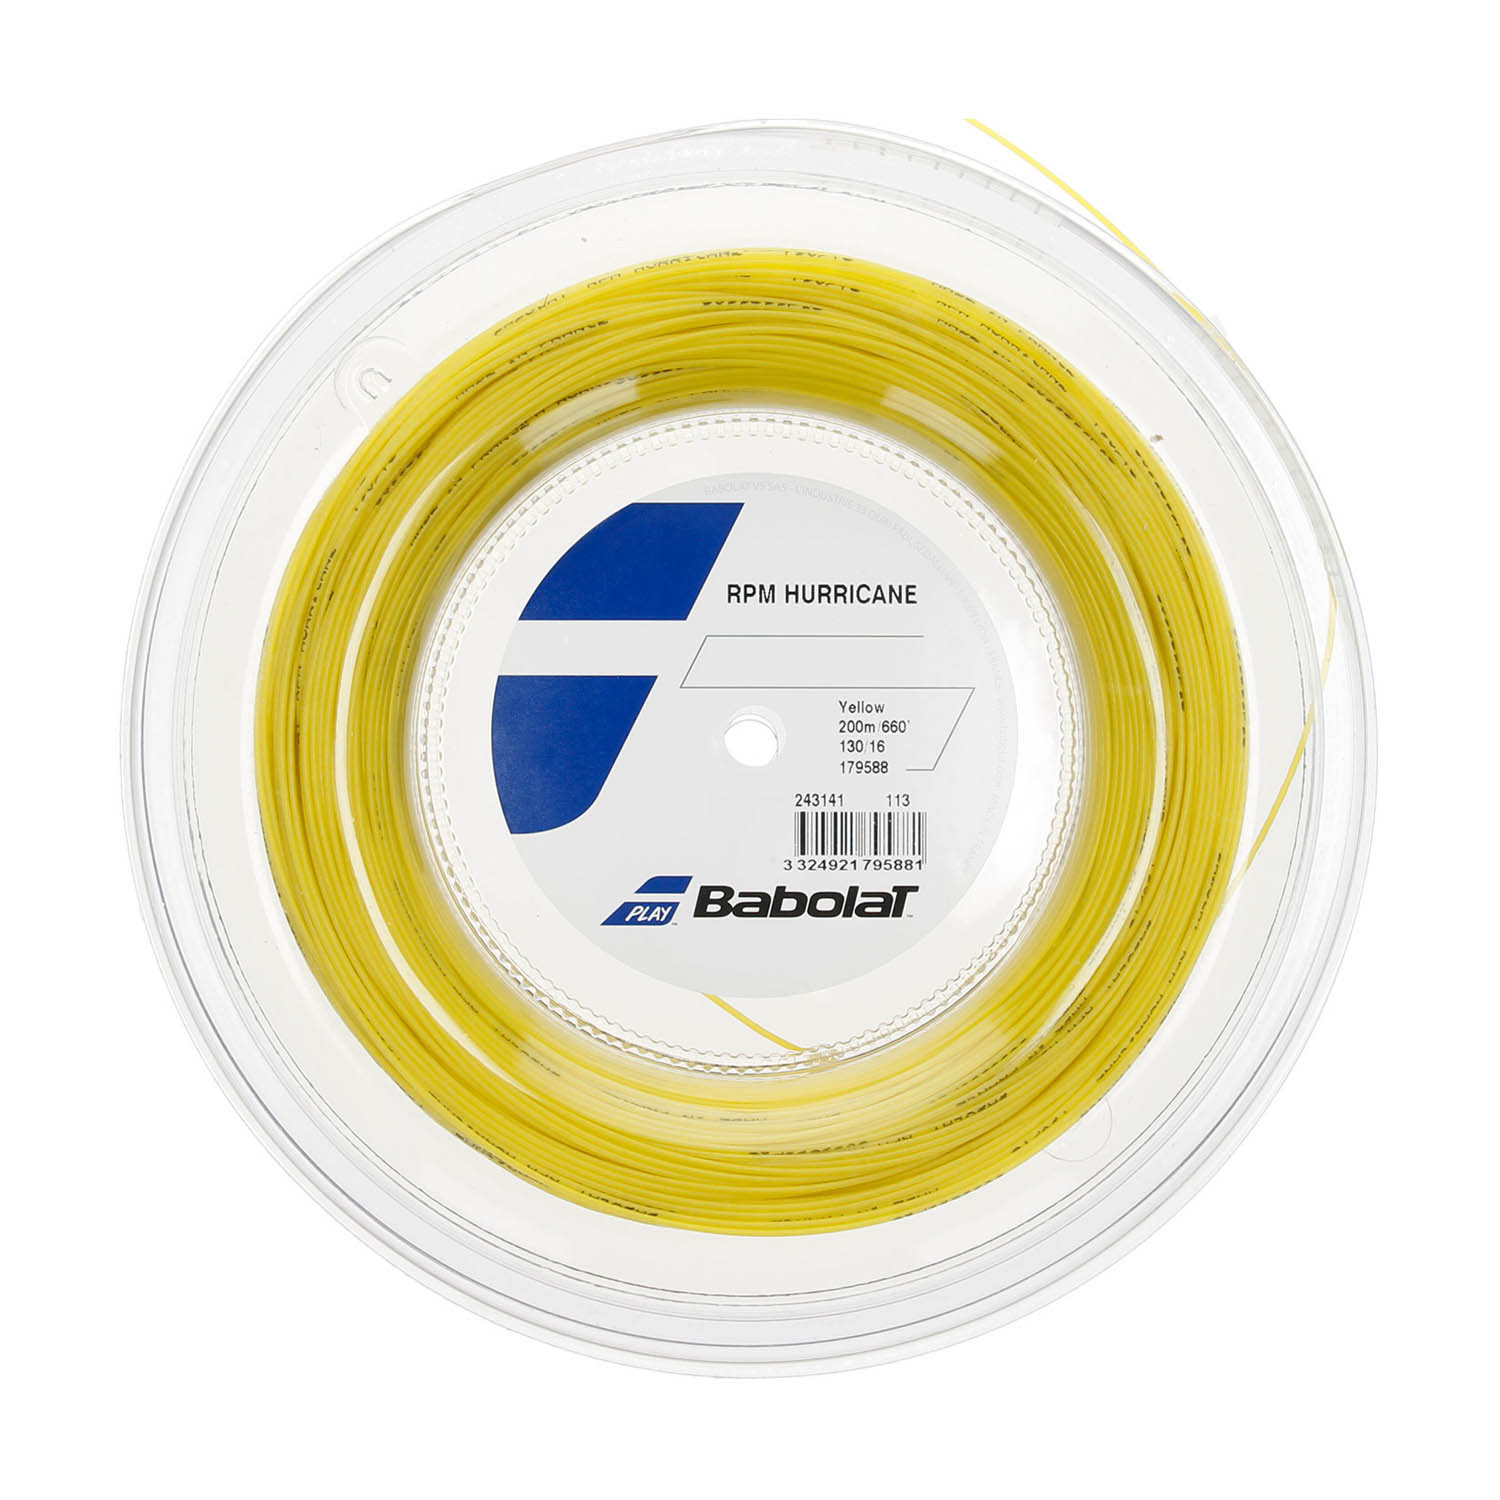 Babolat RPM Hurricane 1.30 Bobina 200 m - Yellow